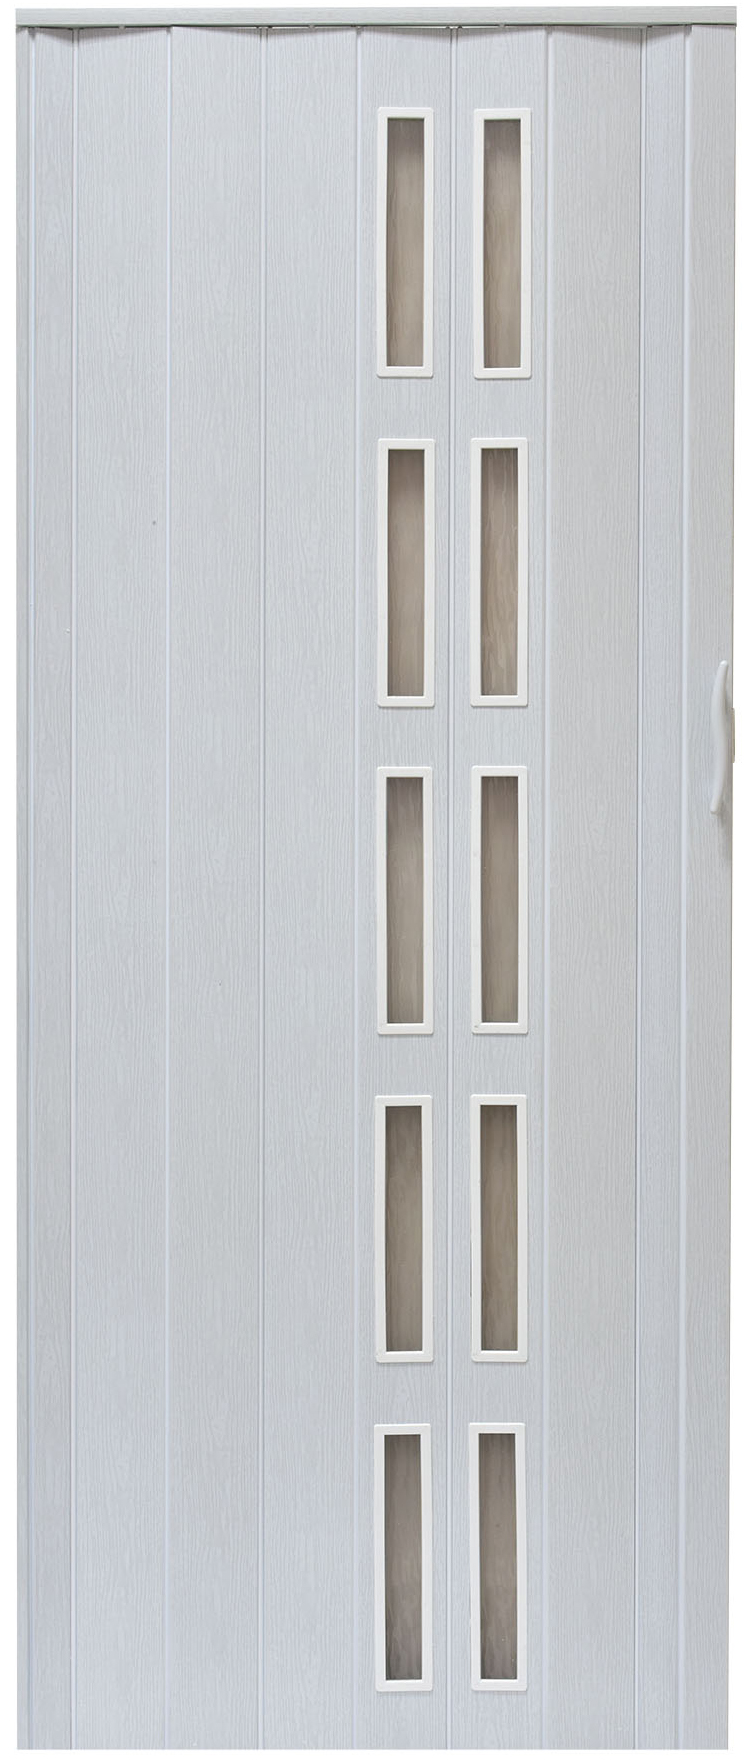 Drzwi harmonijkowe 005S - 80 cm - 49 biały dąb mat 